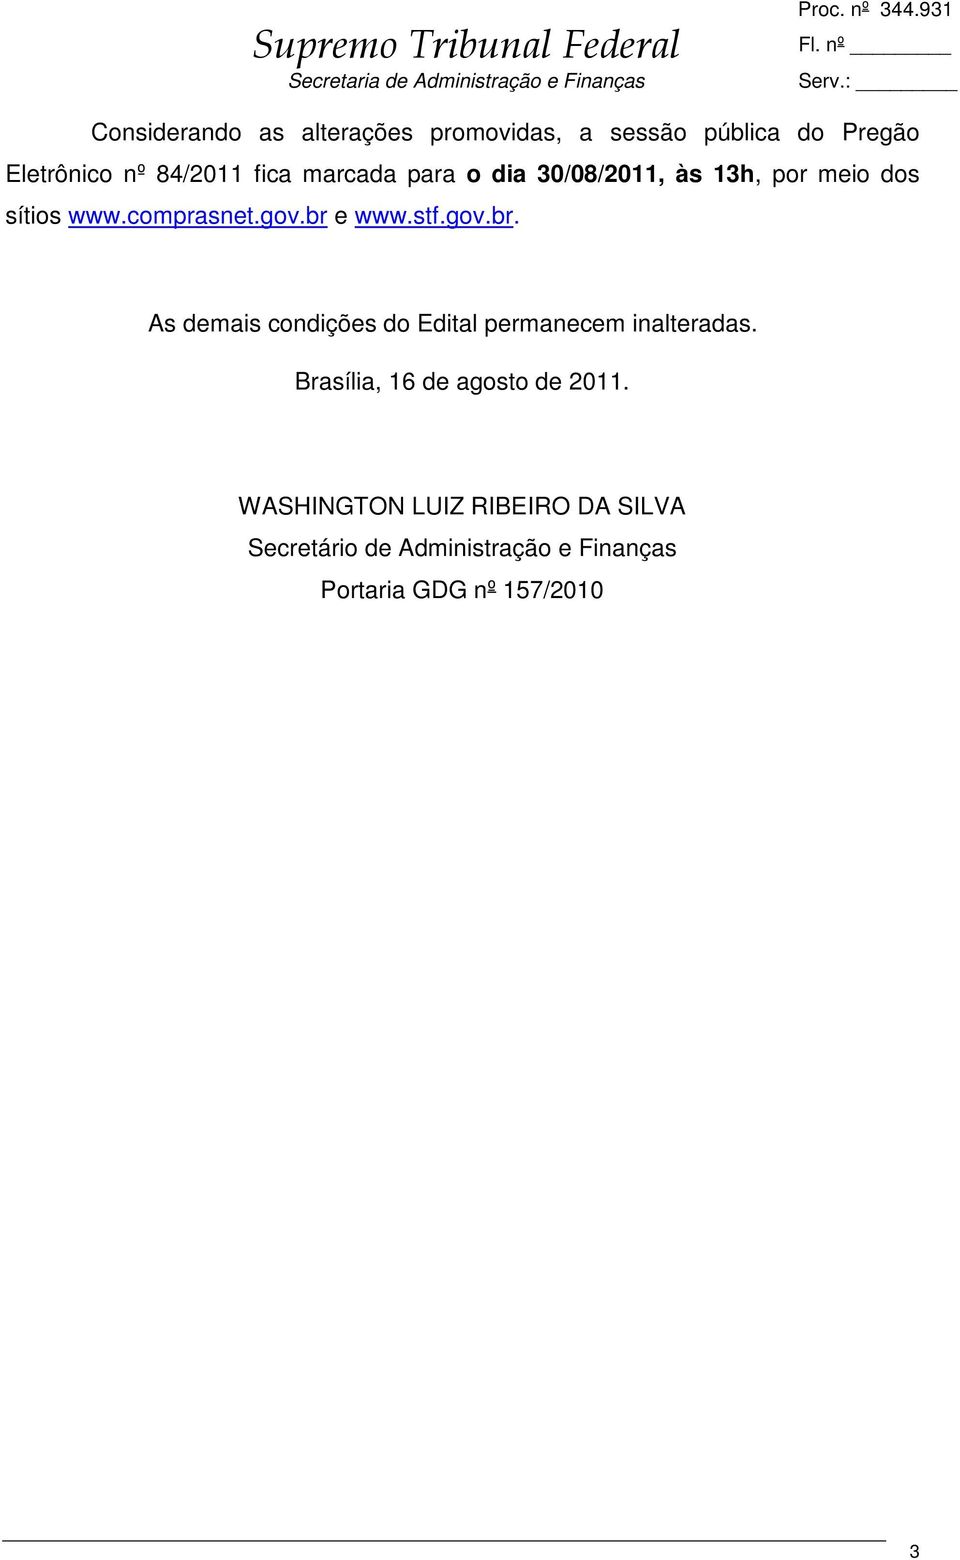 gov.br. As demais condições do Edital permanecem inalteradas. Brasília, 16 de agosto de 2011.